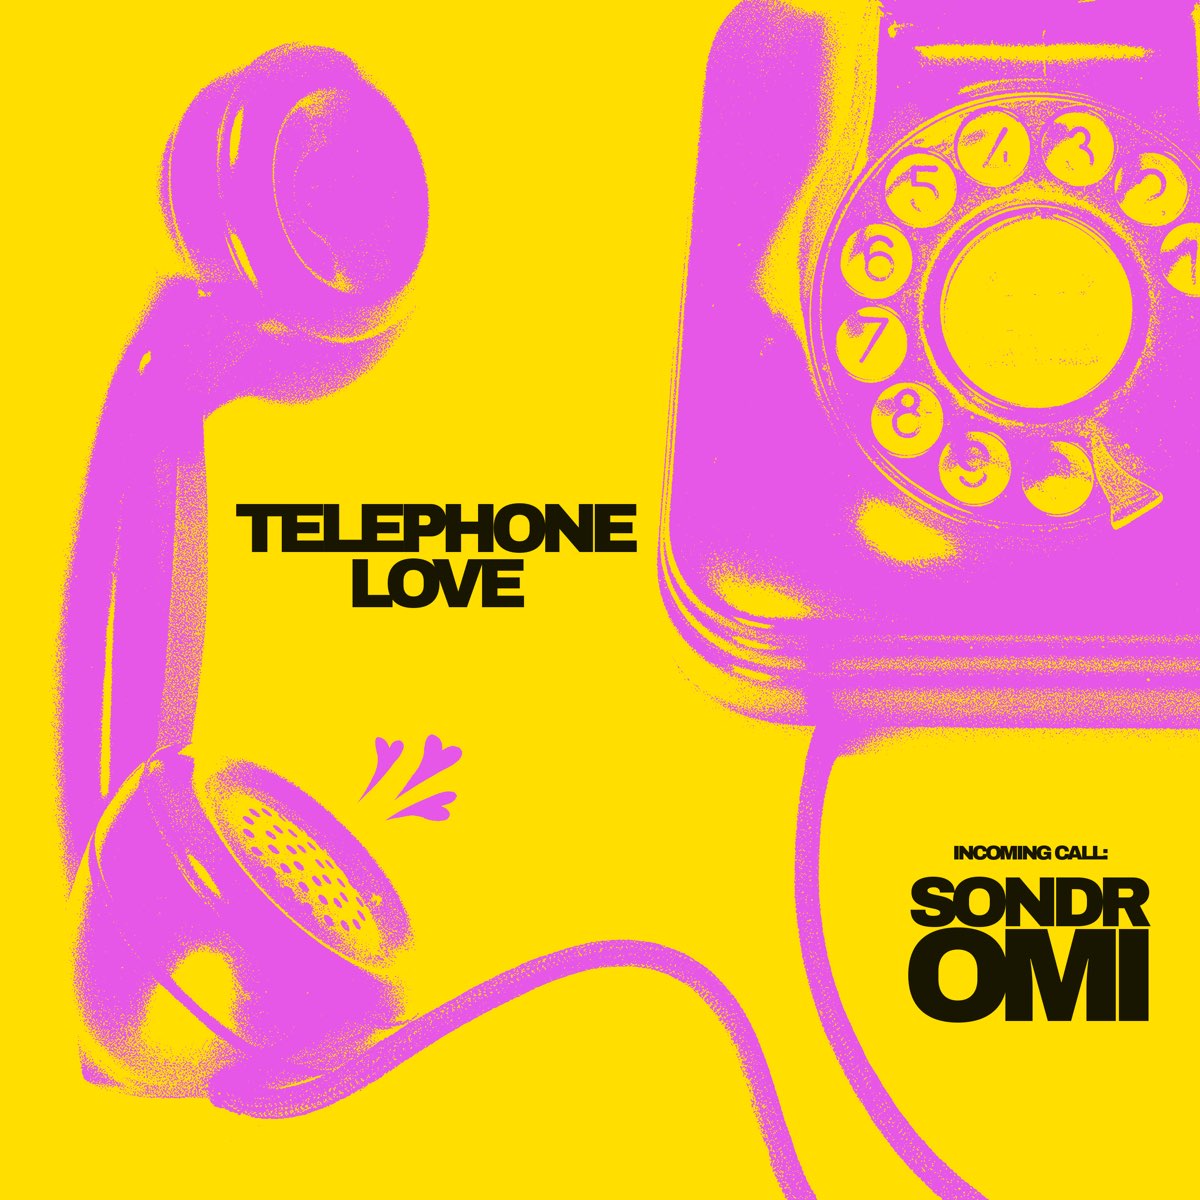 Модные песни на телефон. Телефоны Lovely. Телефон Song. Love Phone. Музыка для телефона LP.